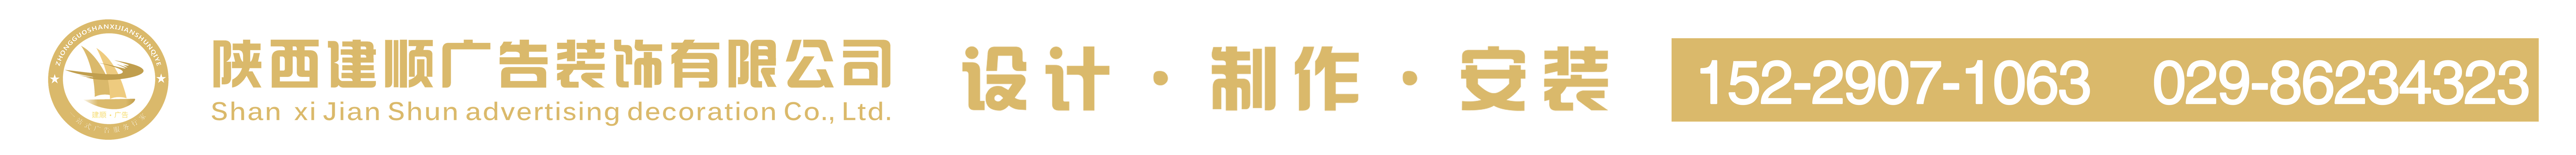 陕西建顺广告装饰有限公司_Logo